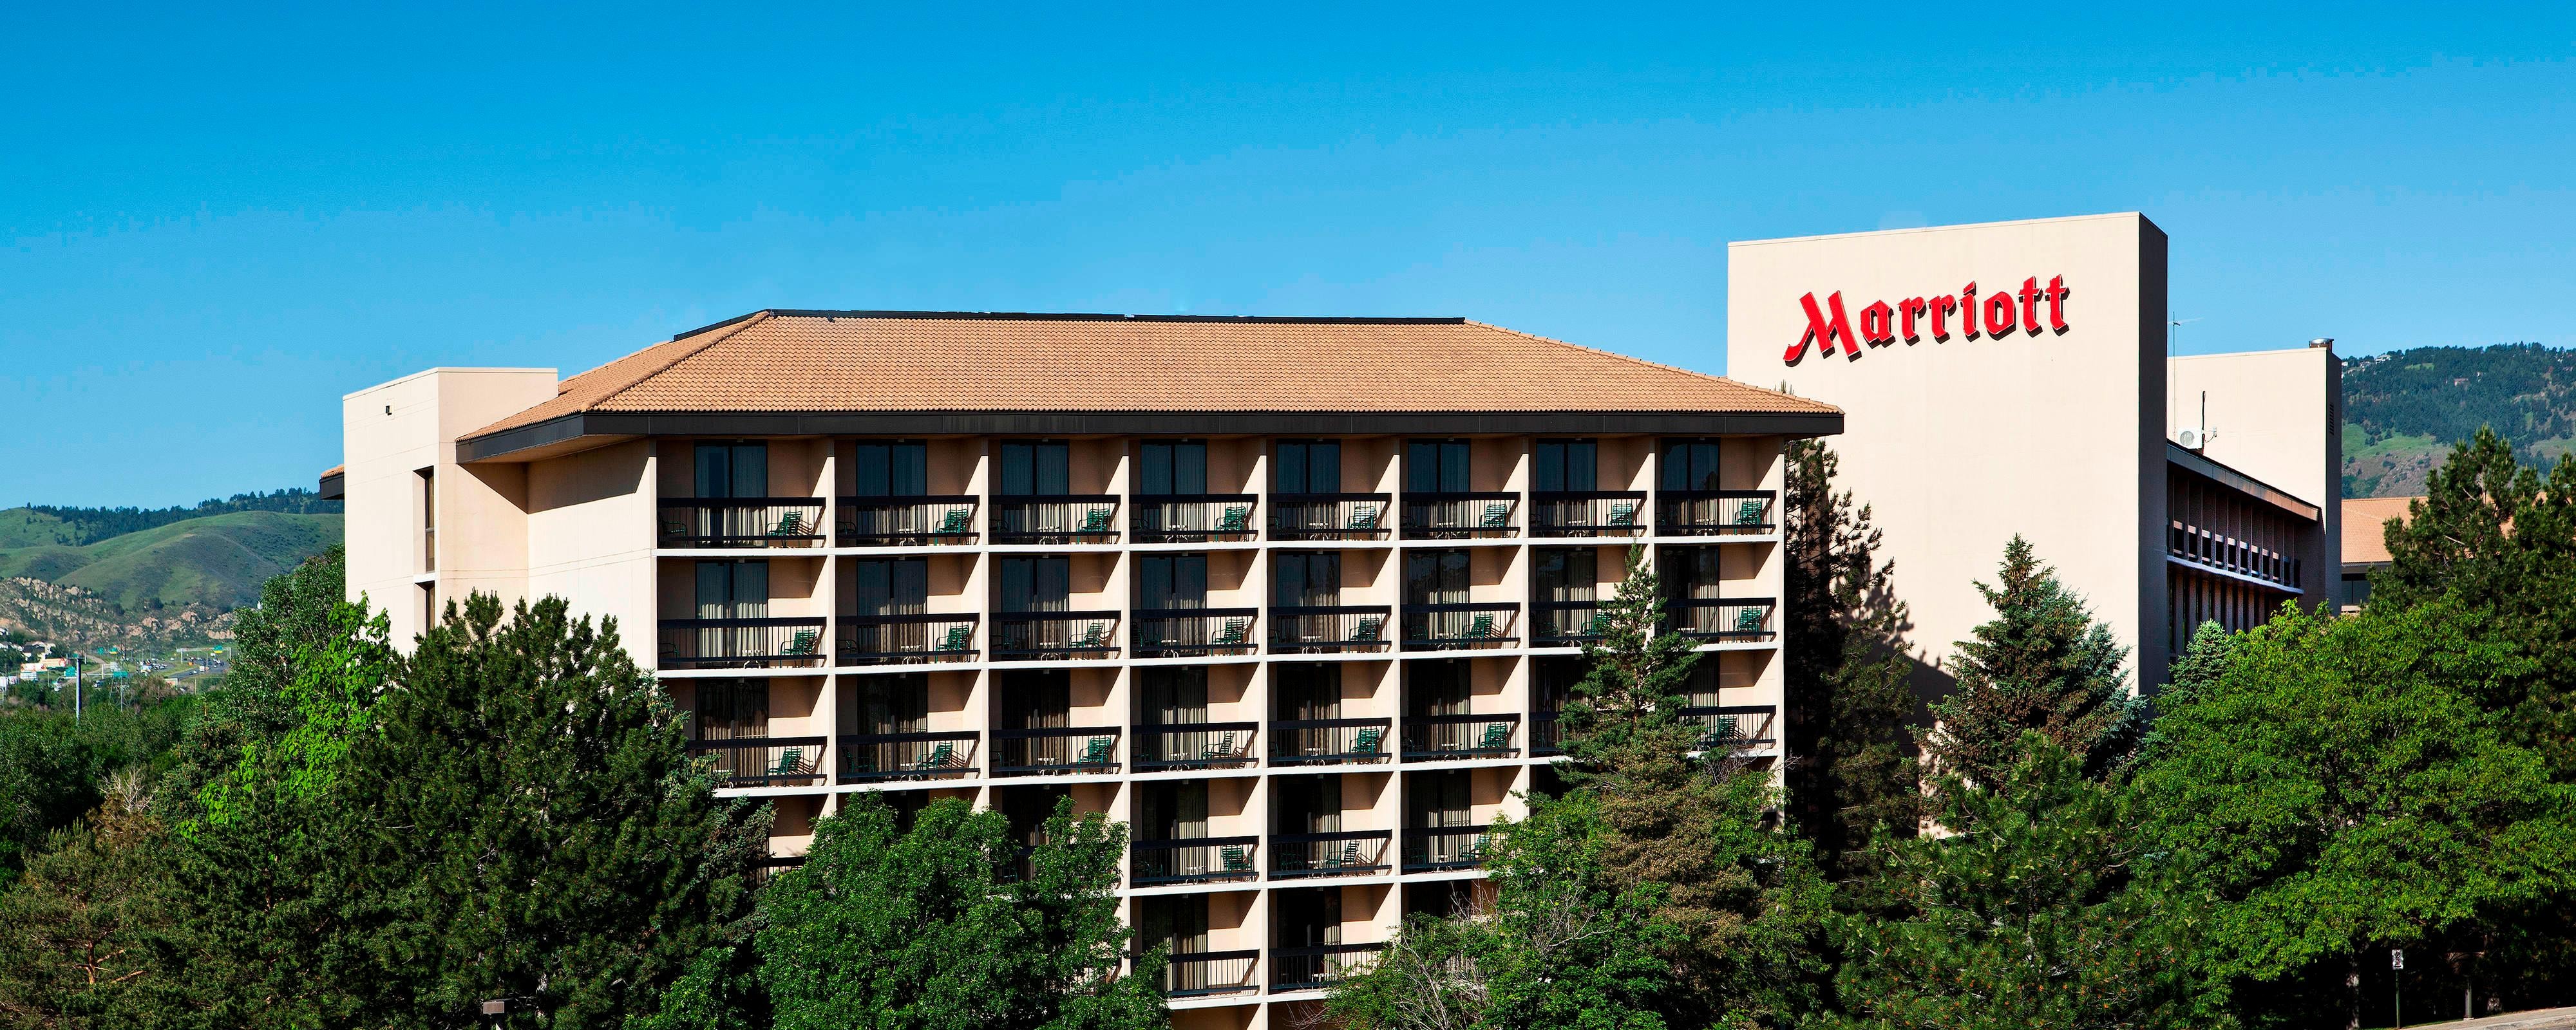 Denver Marriott West Ein Hotel In Golden Colorado